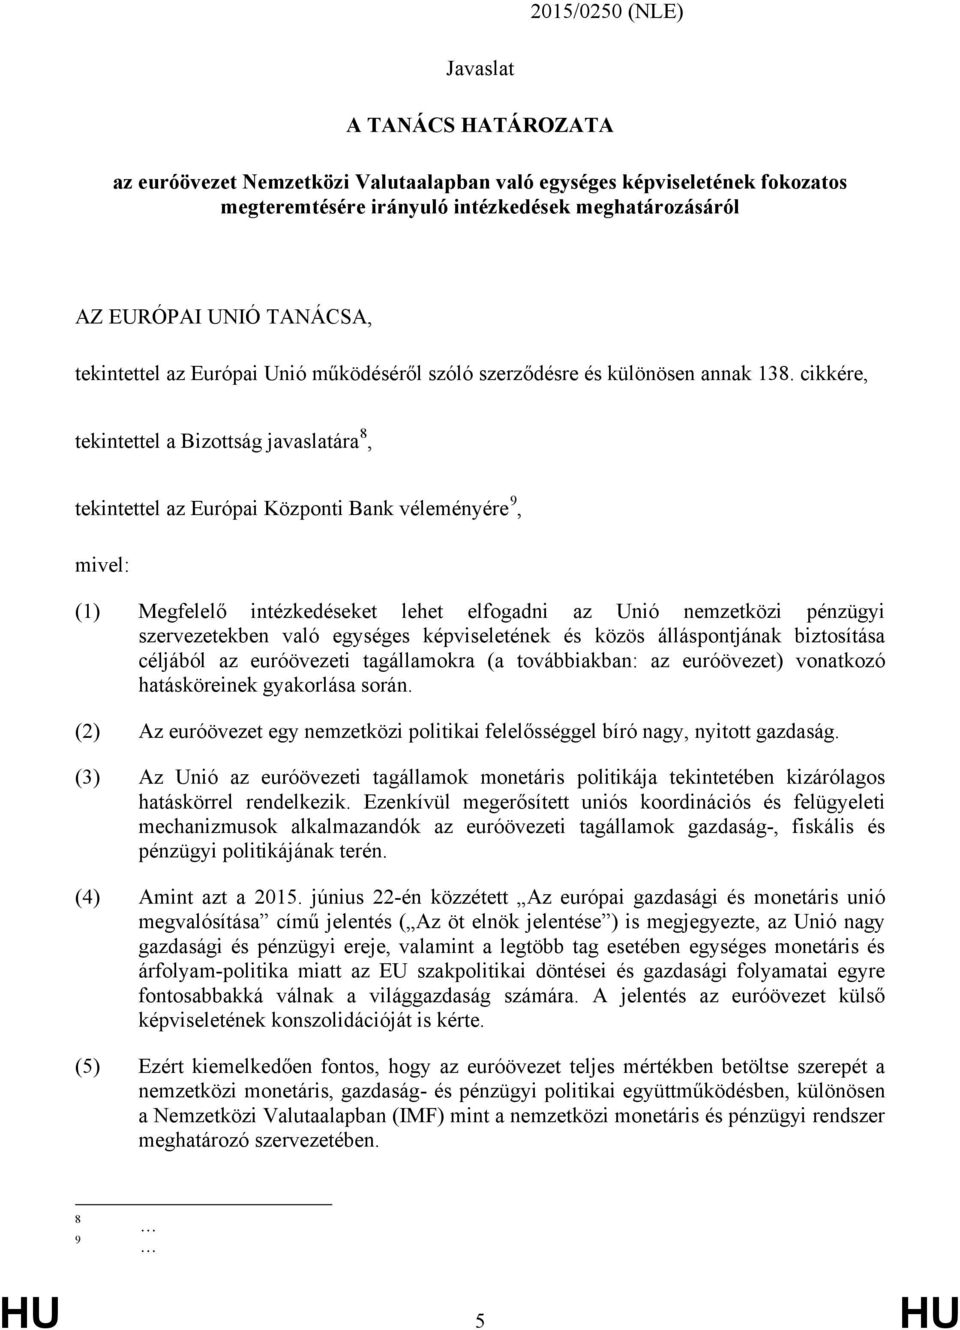 cikkére, tekintettel a Bizottság javaslatára 8, tekintettel az Európai Központi Bank véleményére 9, mivel: (1) Megfelelő intézkedéseket lehet elfogadni az Unió nemzetközi pénzügyi szervezetekben való